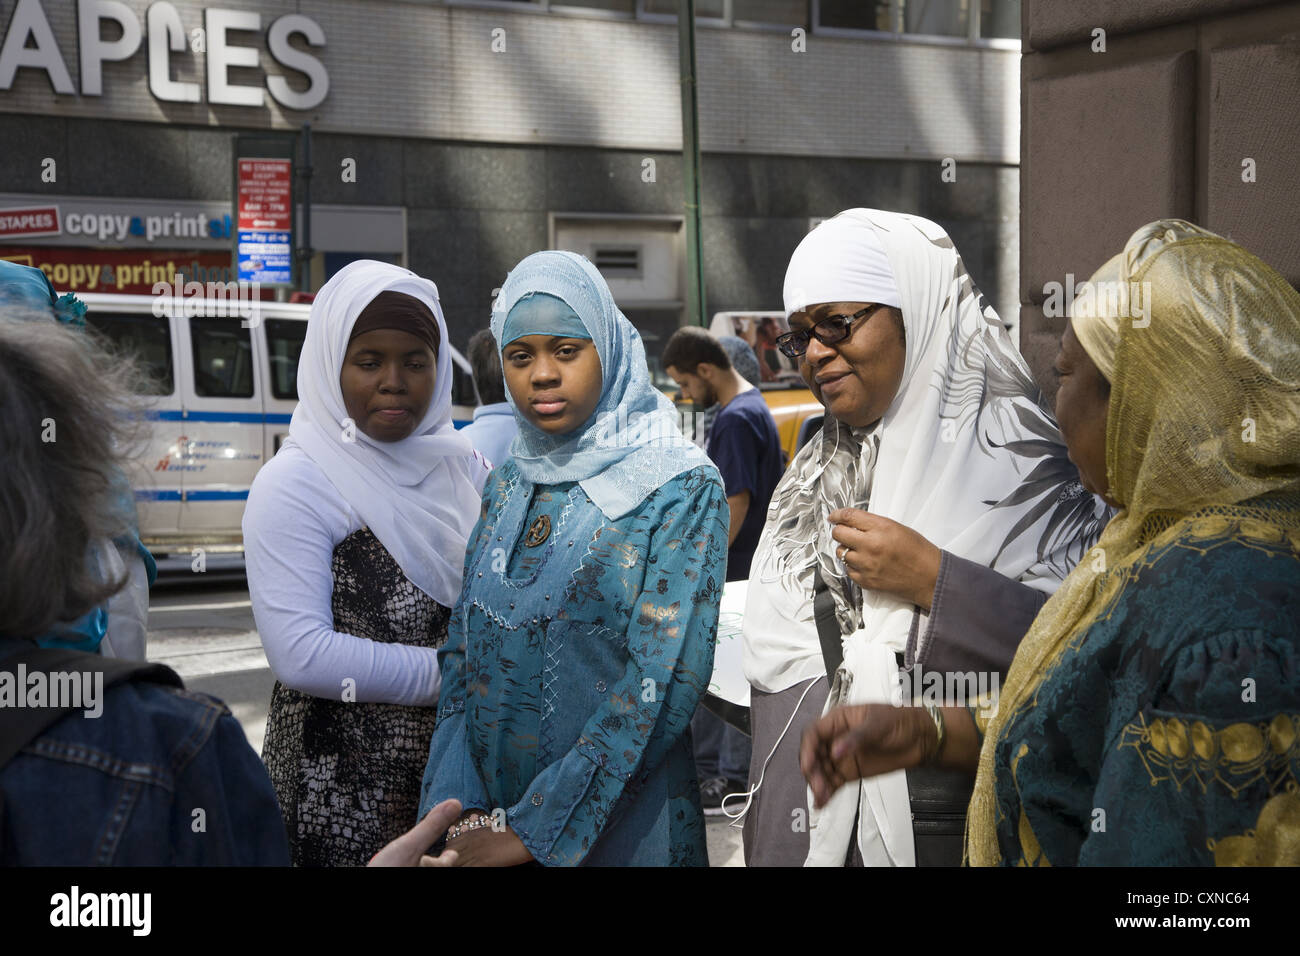 Jährliche Muslim American Day Parade auf der Madison Avenue in New York City. Traditionell gekleidete Frauen warten auf die Parade zu beginnen. Stockfoto